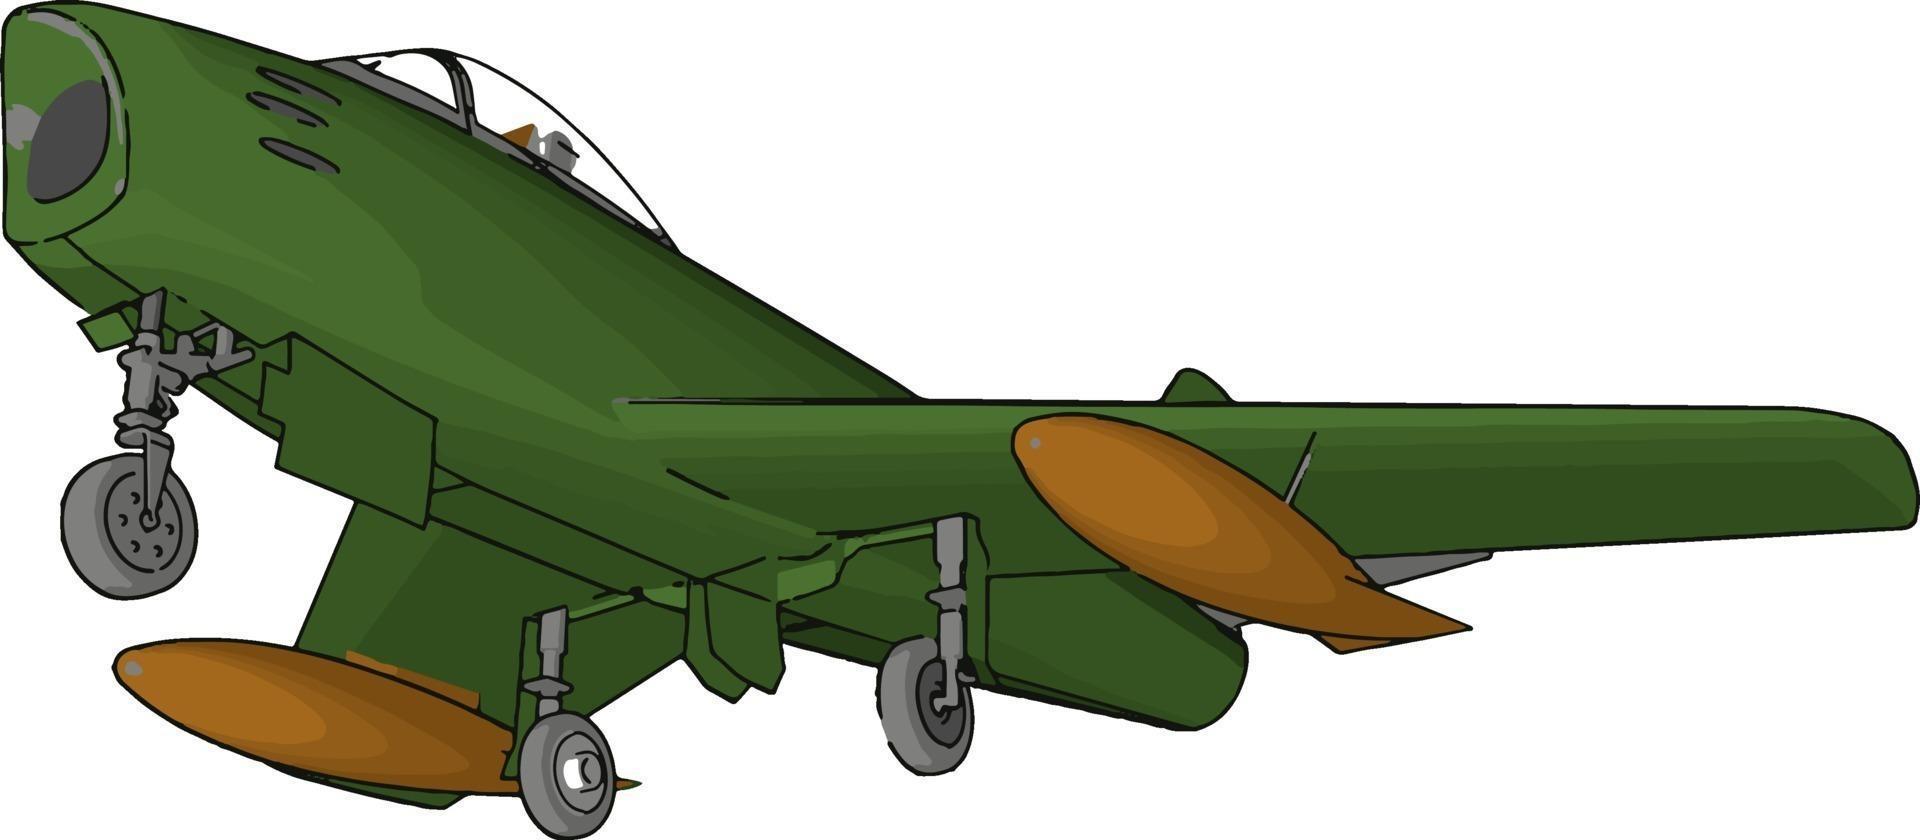 grüner Bomber, Illustration, Vektor auf weißem Hintergrund.